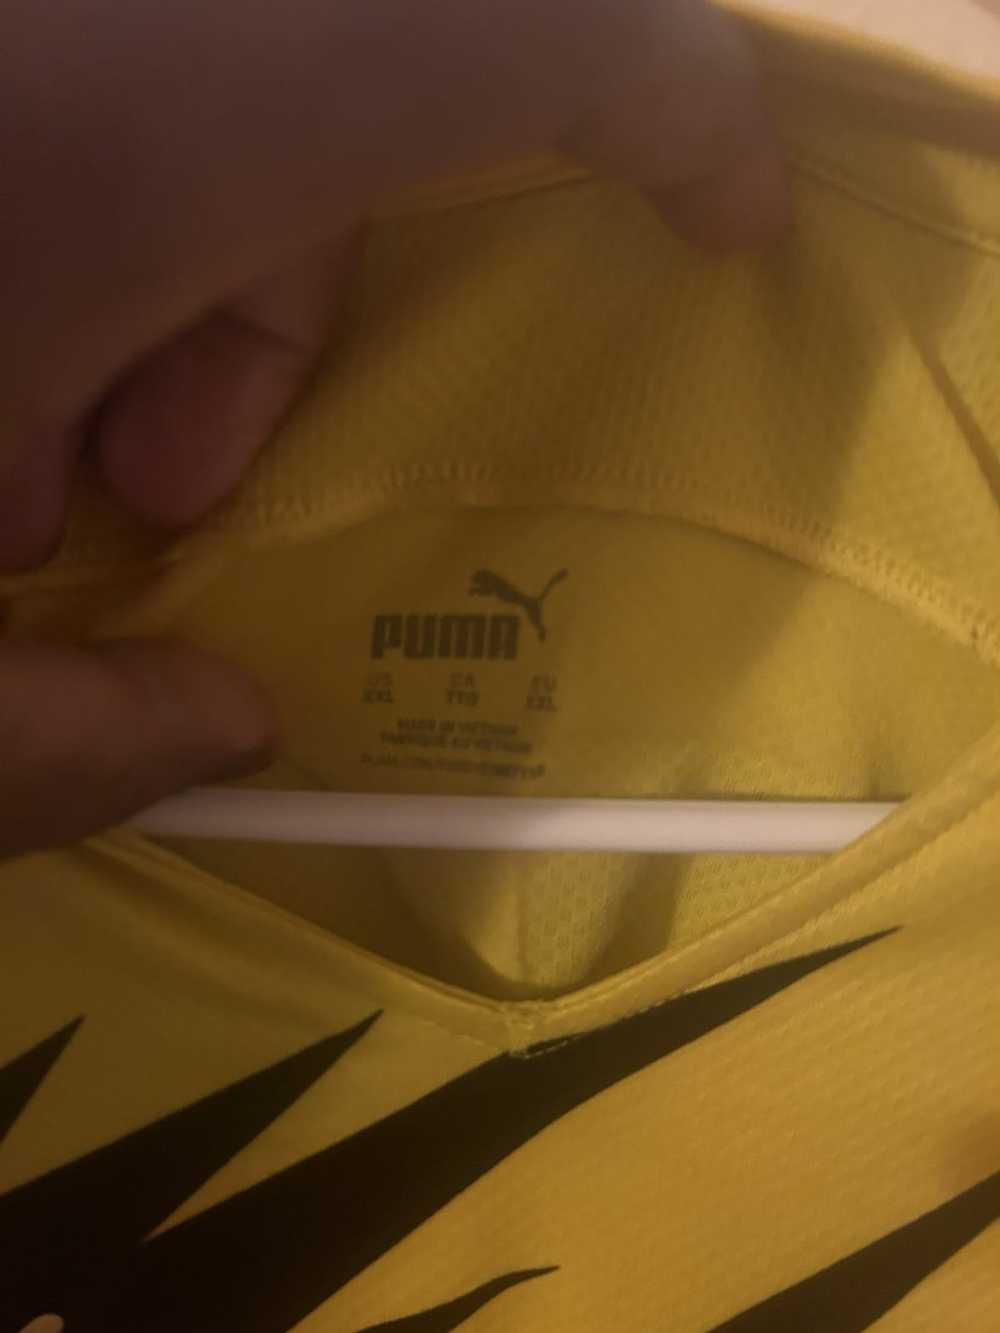 Puma Borussia Dortmund kit - image 3